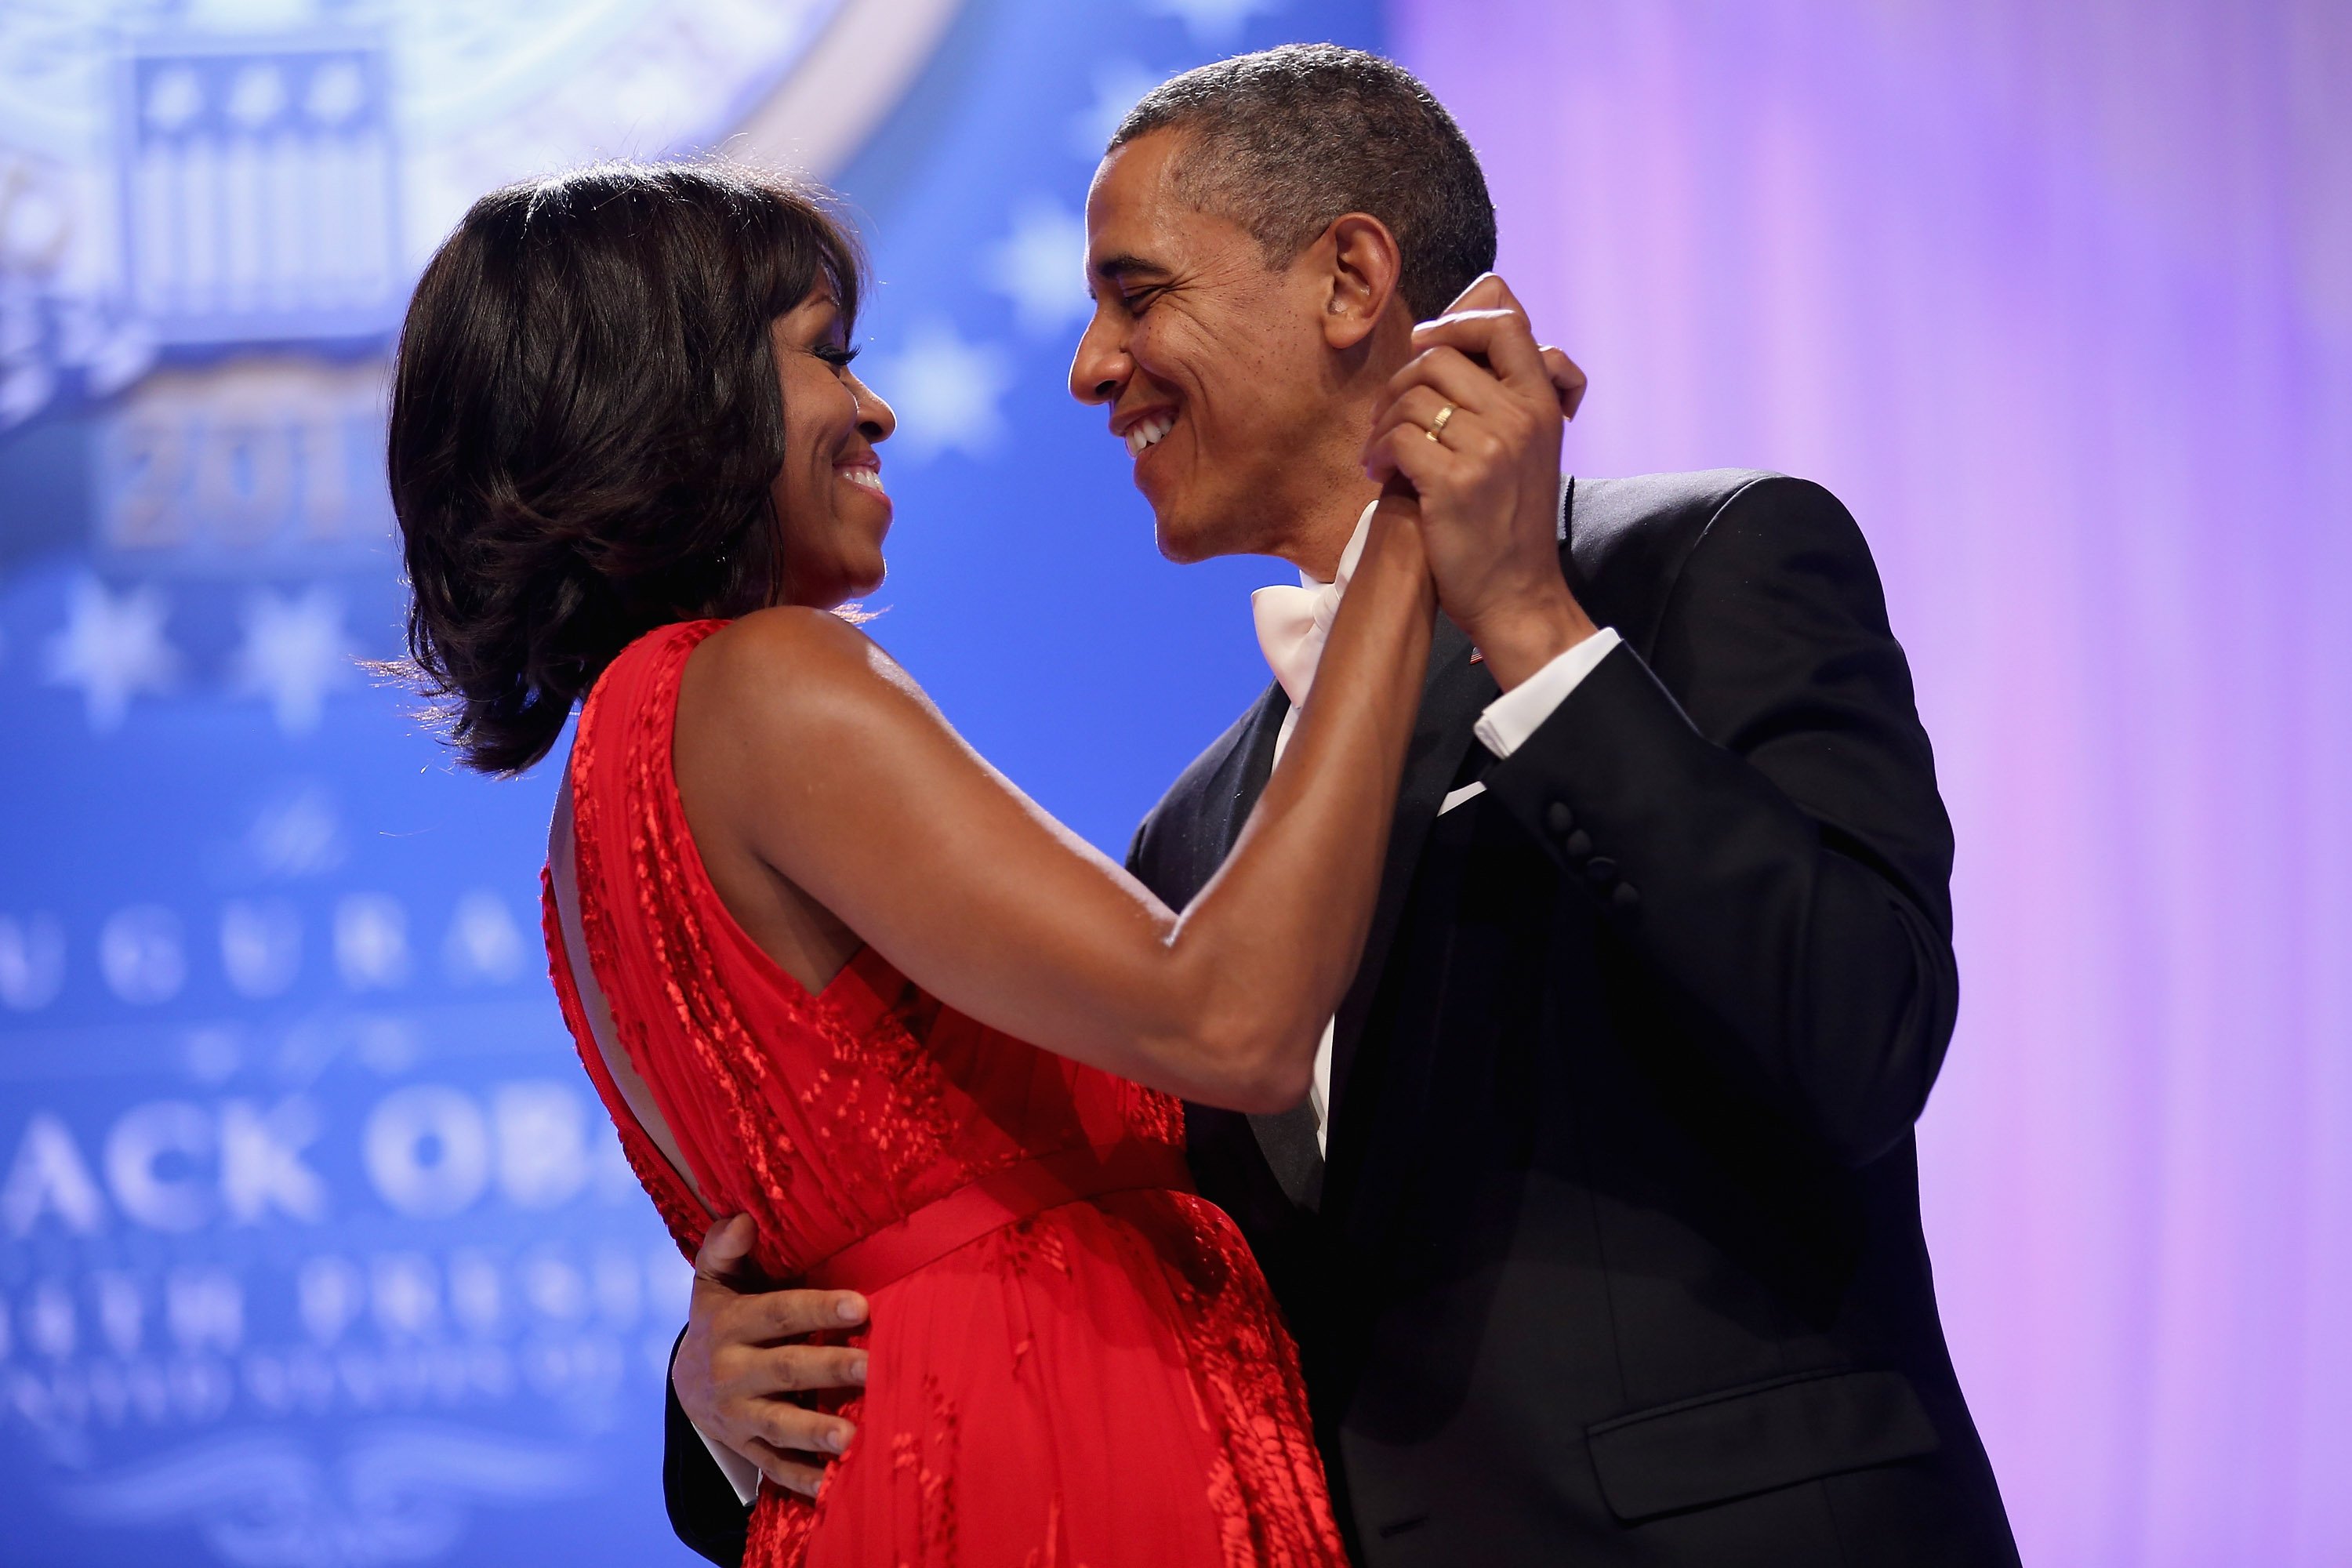 Barack Obama y Michelle Obama bailando juntos durante el Baile Inaugural del Comandante en Jefe en el Centro de Convenciones Walter Washington, el 21 de enero de 2013 en Washington, DC. | Foto: Getty Images